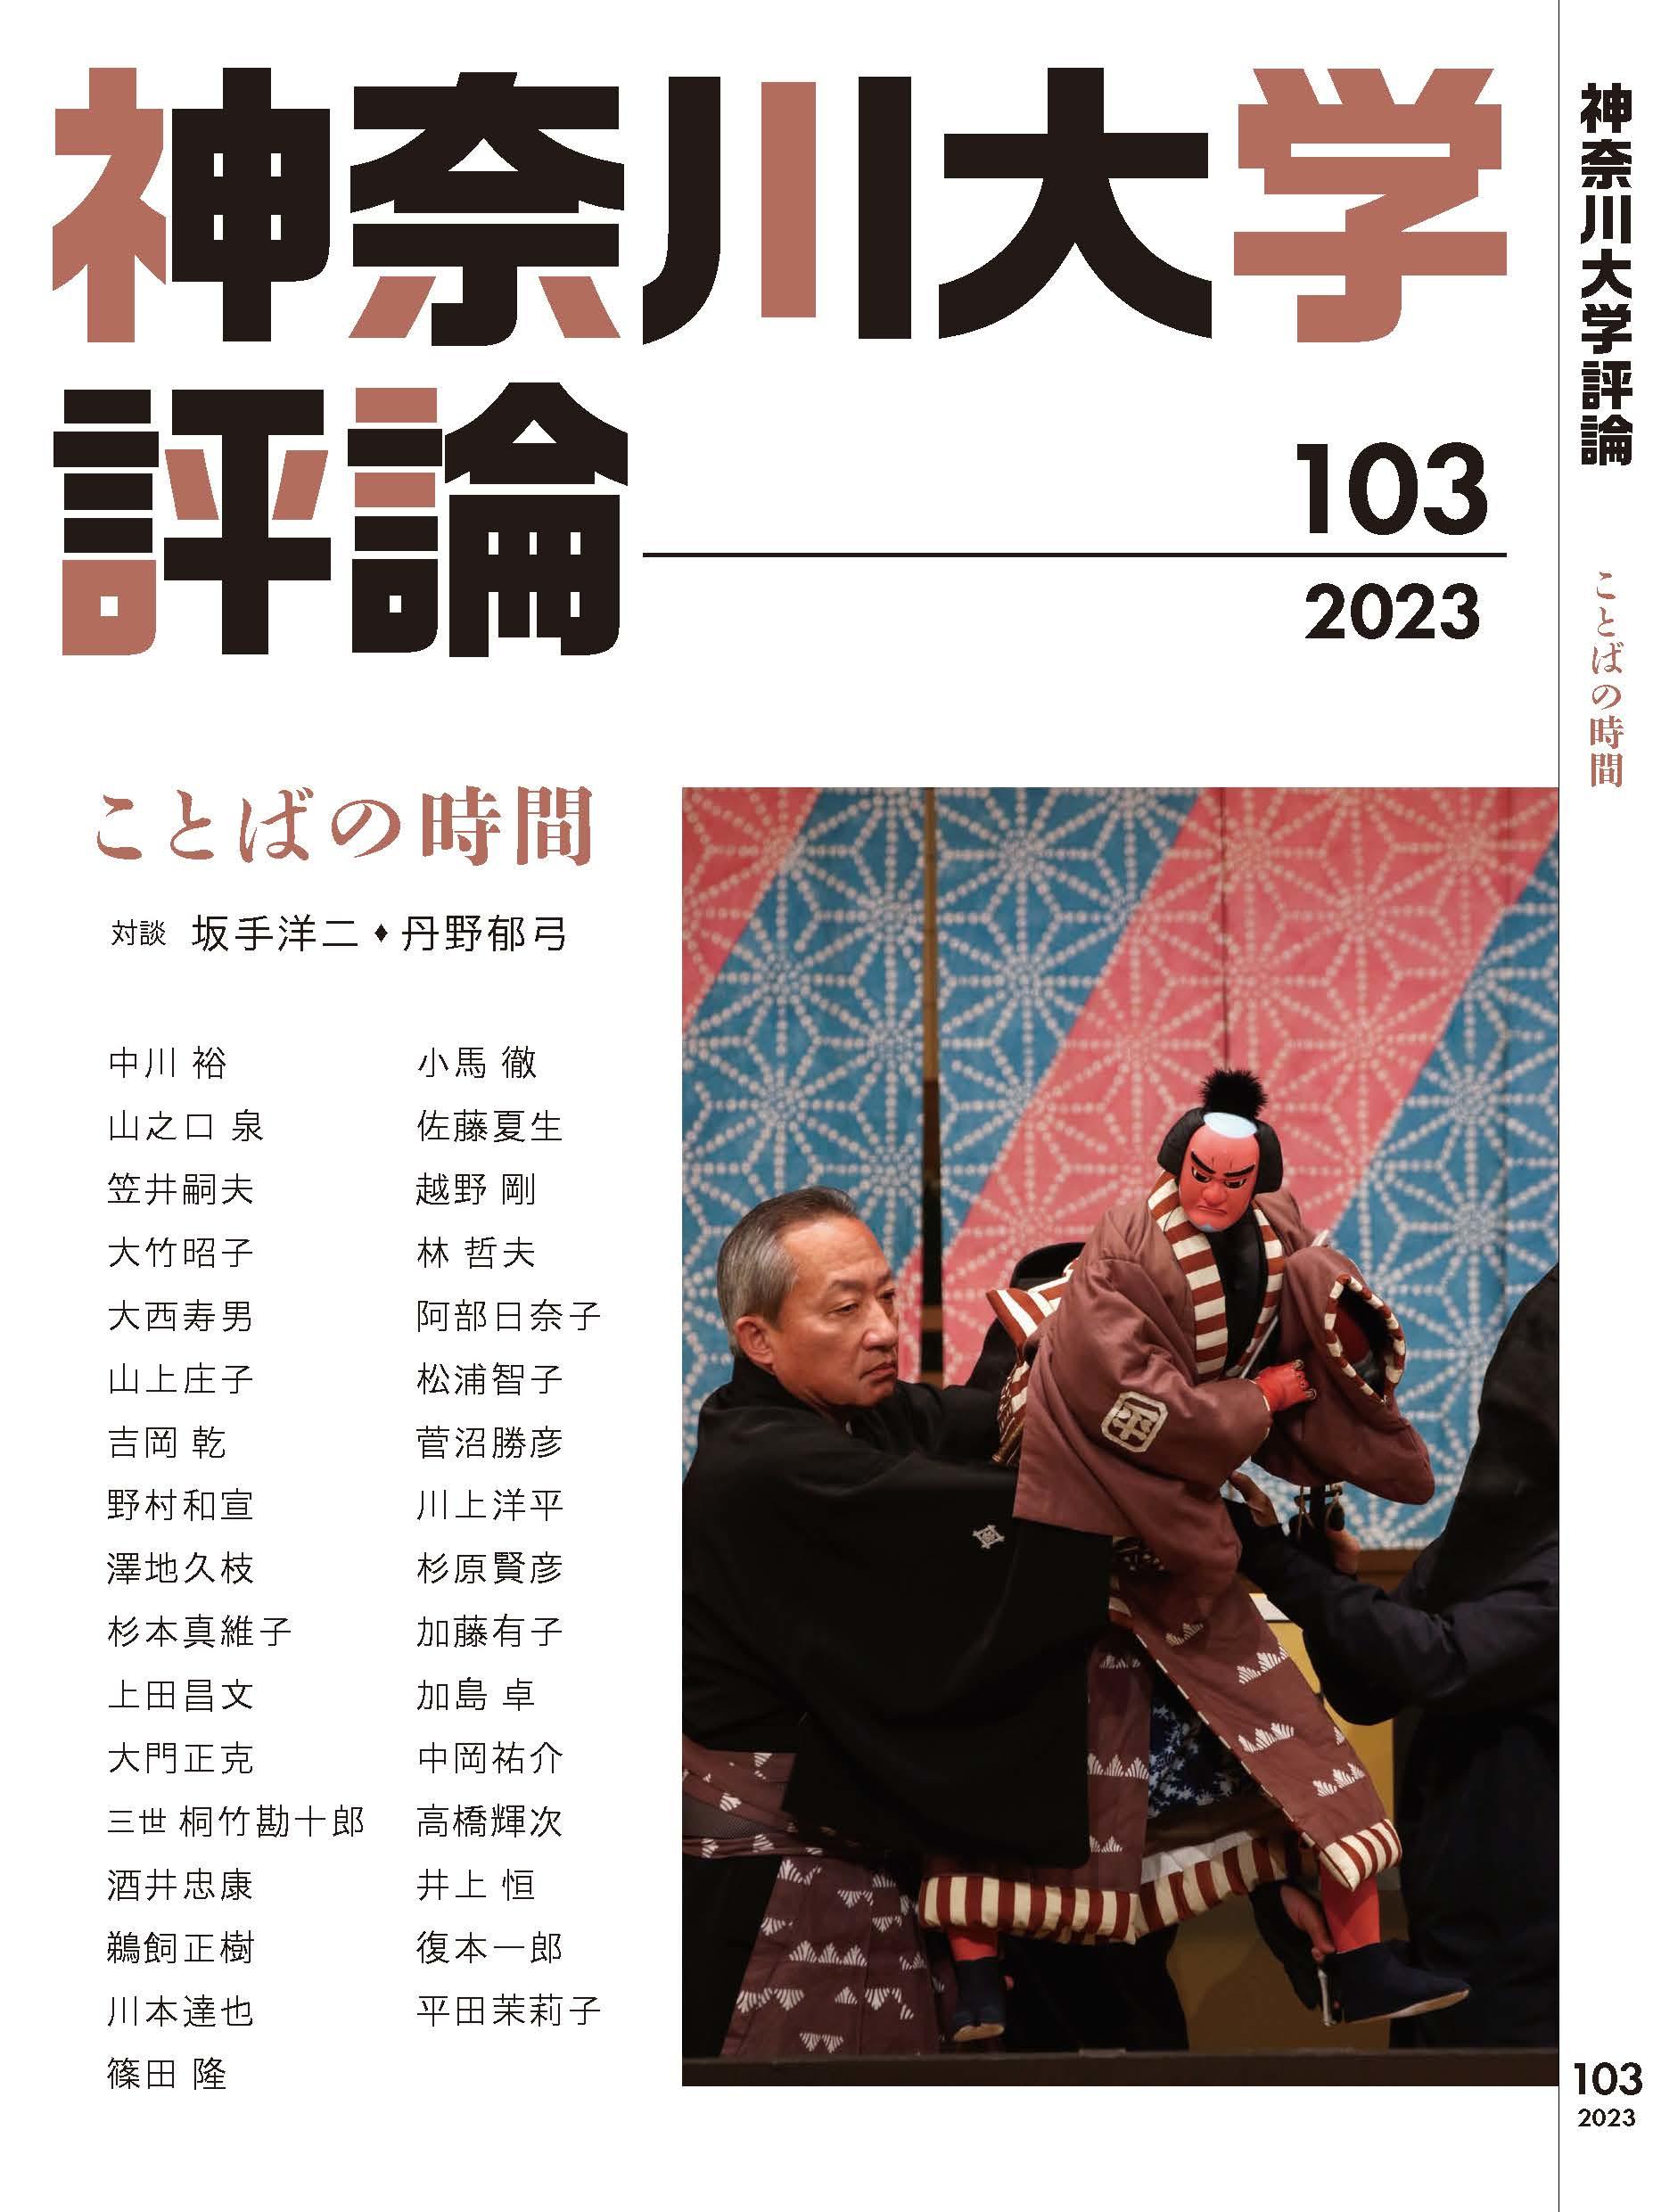 【神奈川大学】''アカデミック・ジャーナリズム''がコンセプト 『神奈川大学評論』　　第103号を発行